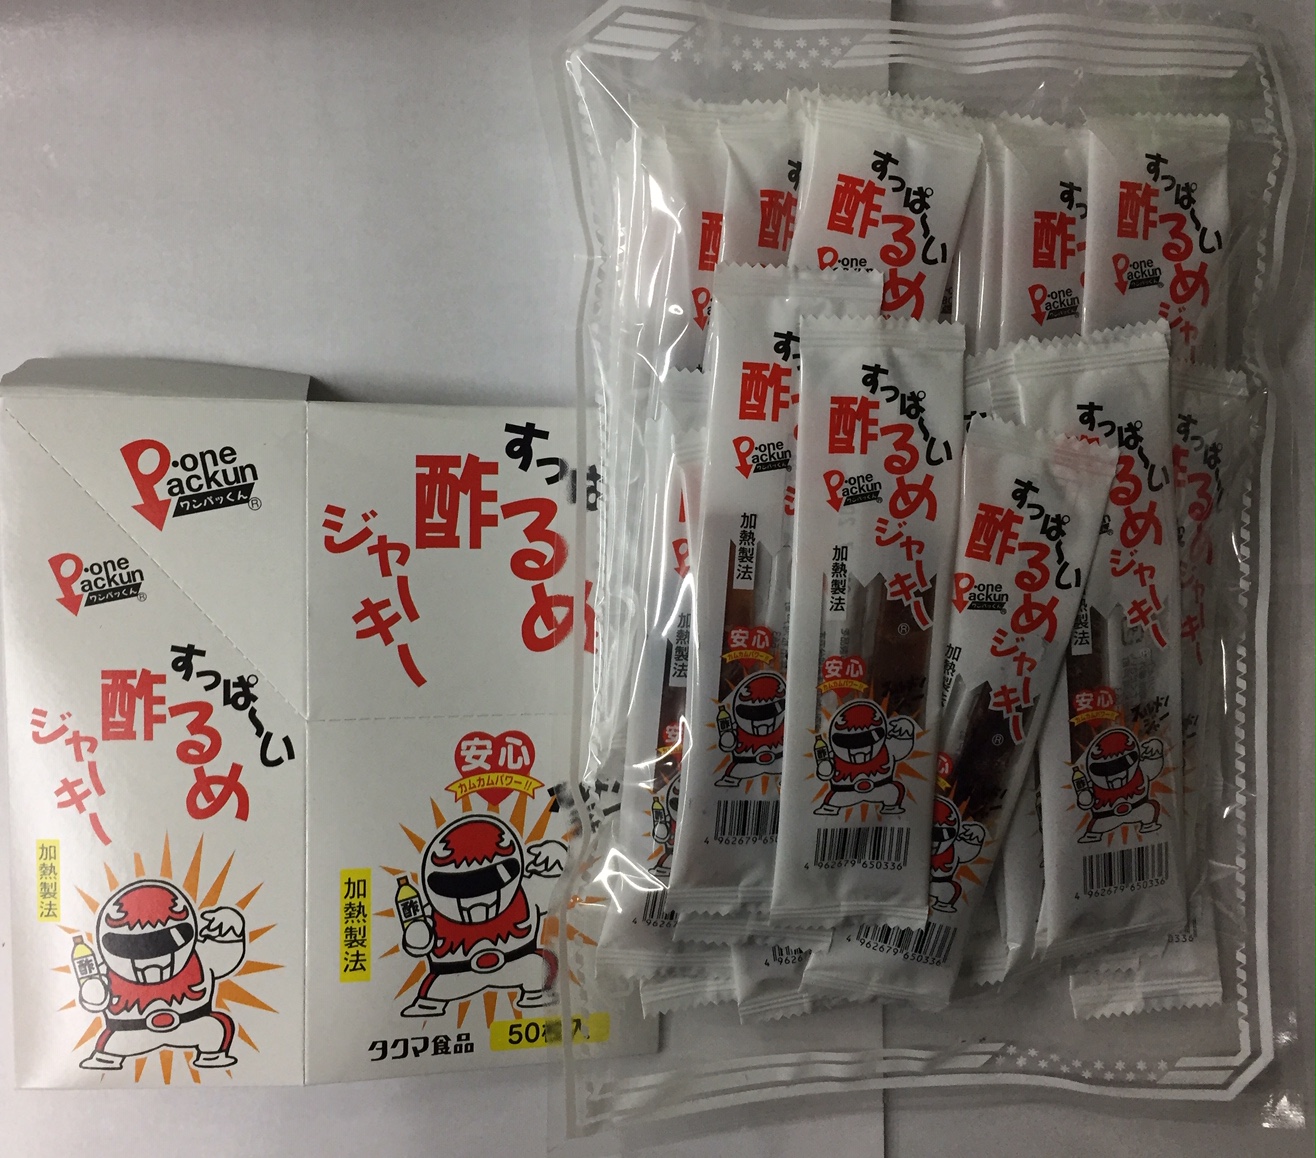 日本限定日本限定送料無料 すっぱーい酢るめジャーキー（すっぱいするめジャーキー）50枚入り タクマ食品 メール便発送の為、するめジャーキー50枚を別袋に詰めての発送となります  代引き不可 日付指定不可 ポスト投函 駄菓子